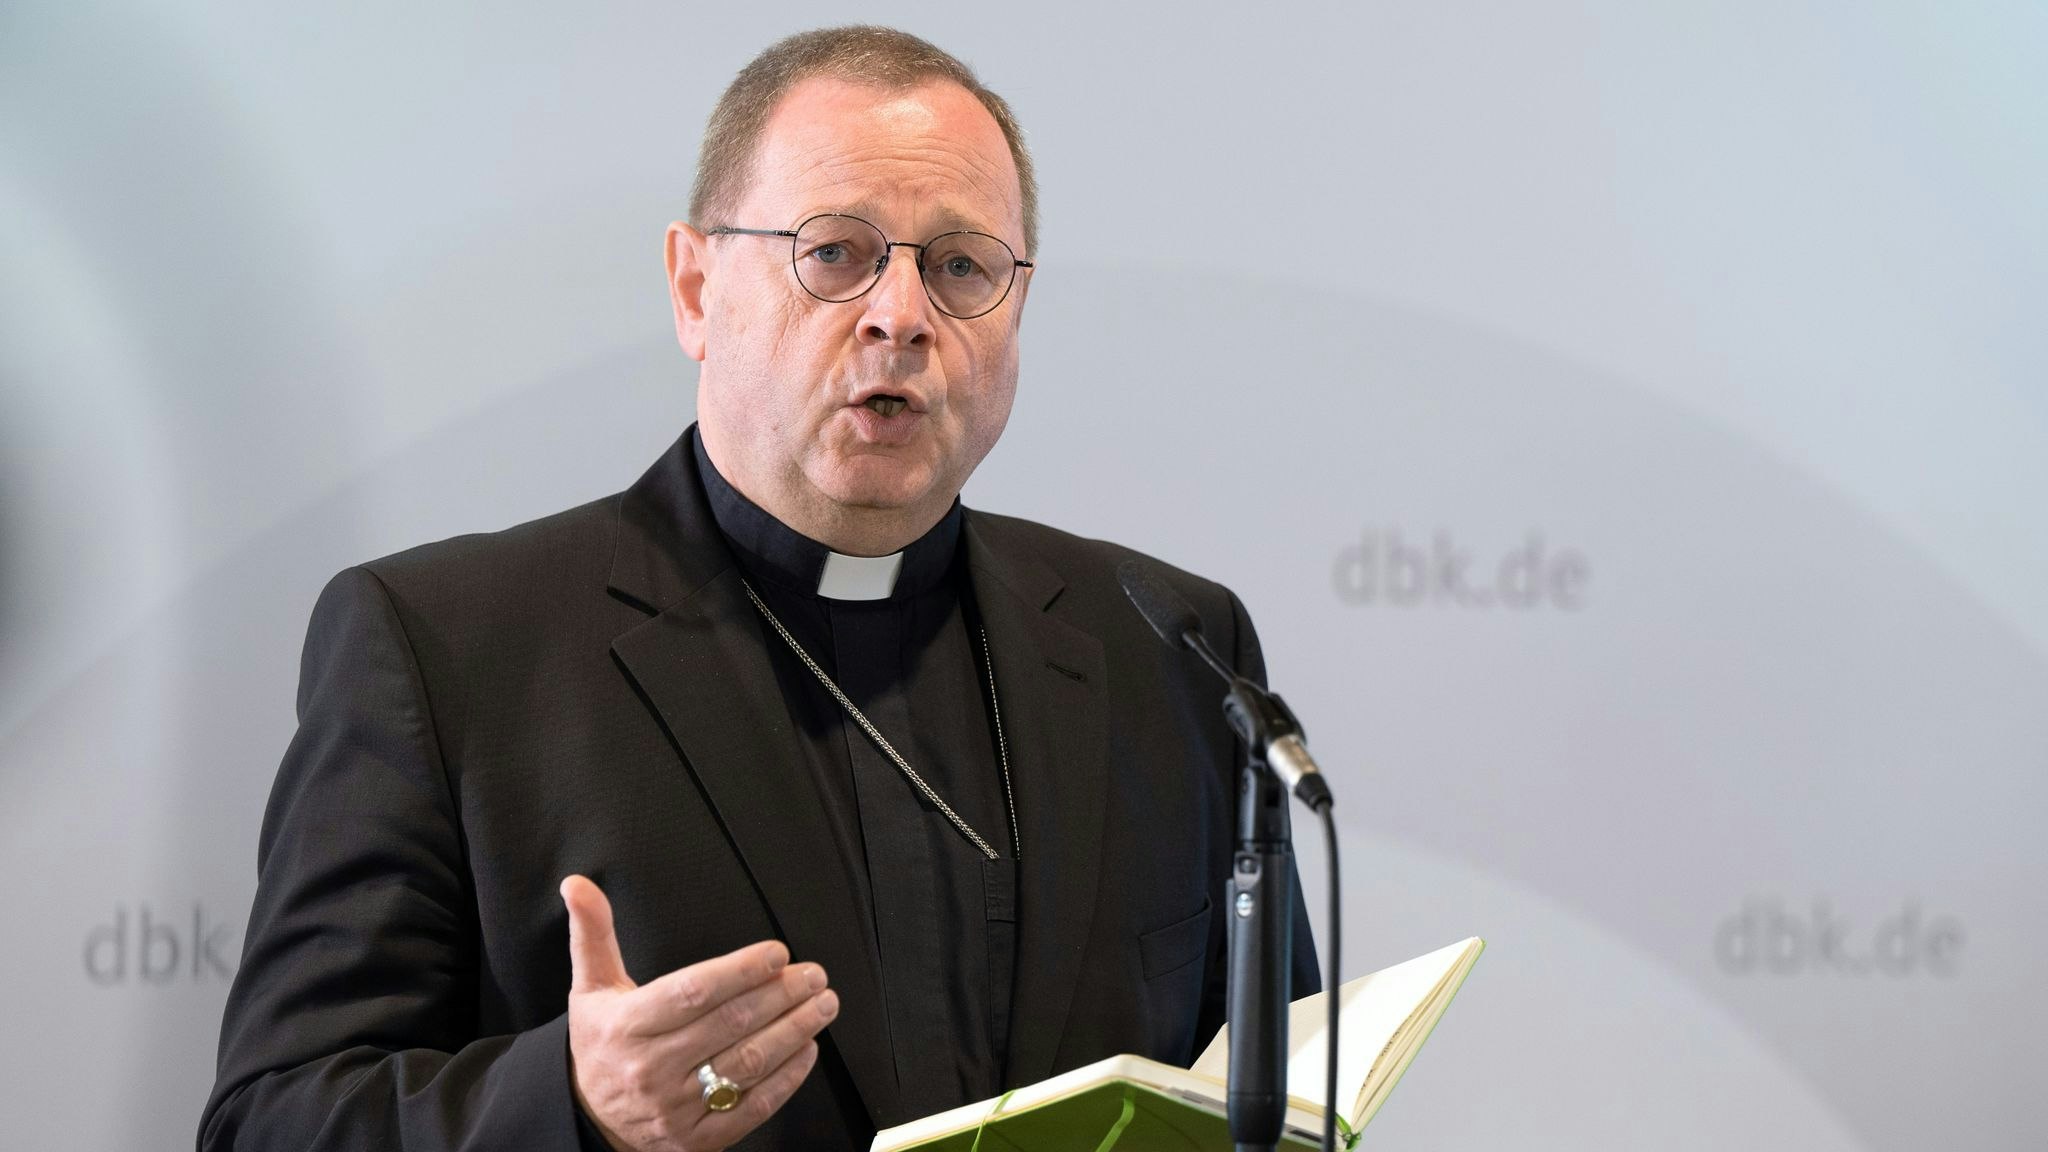 Georg Bätzing, Bischof von Limburg und Vorsitzender der Deutschen Bischofskonferenz. Foto: Sebastian Gollnow / dpa